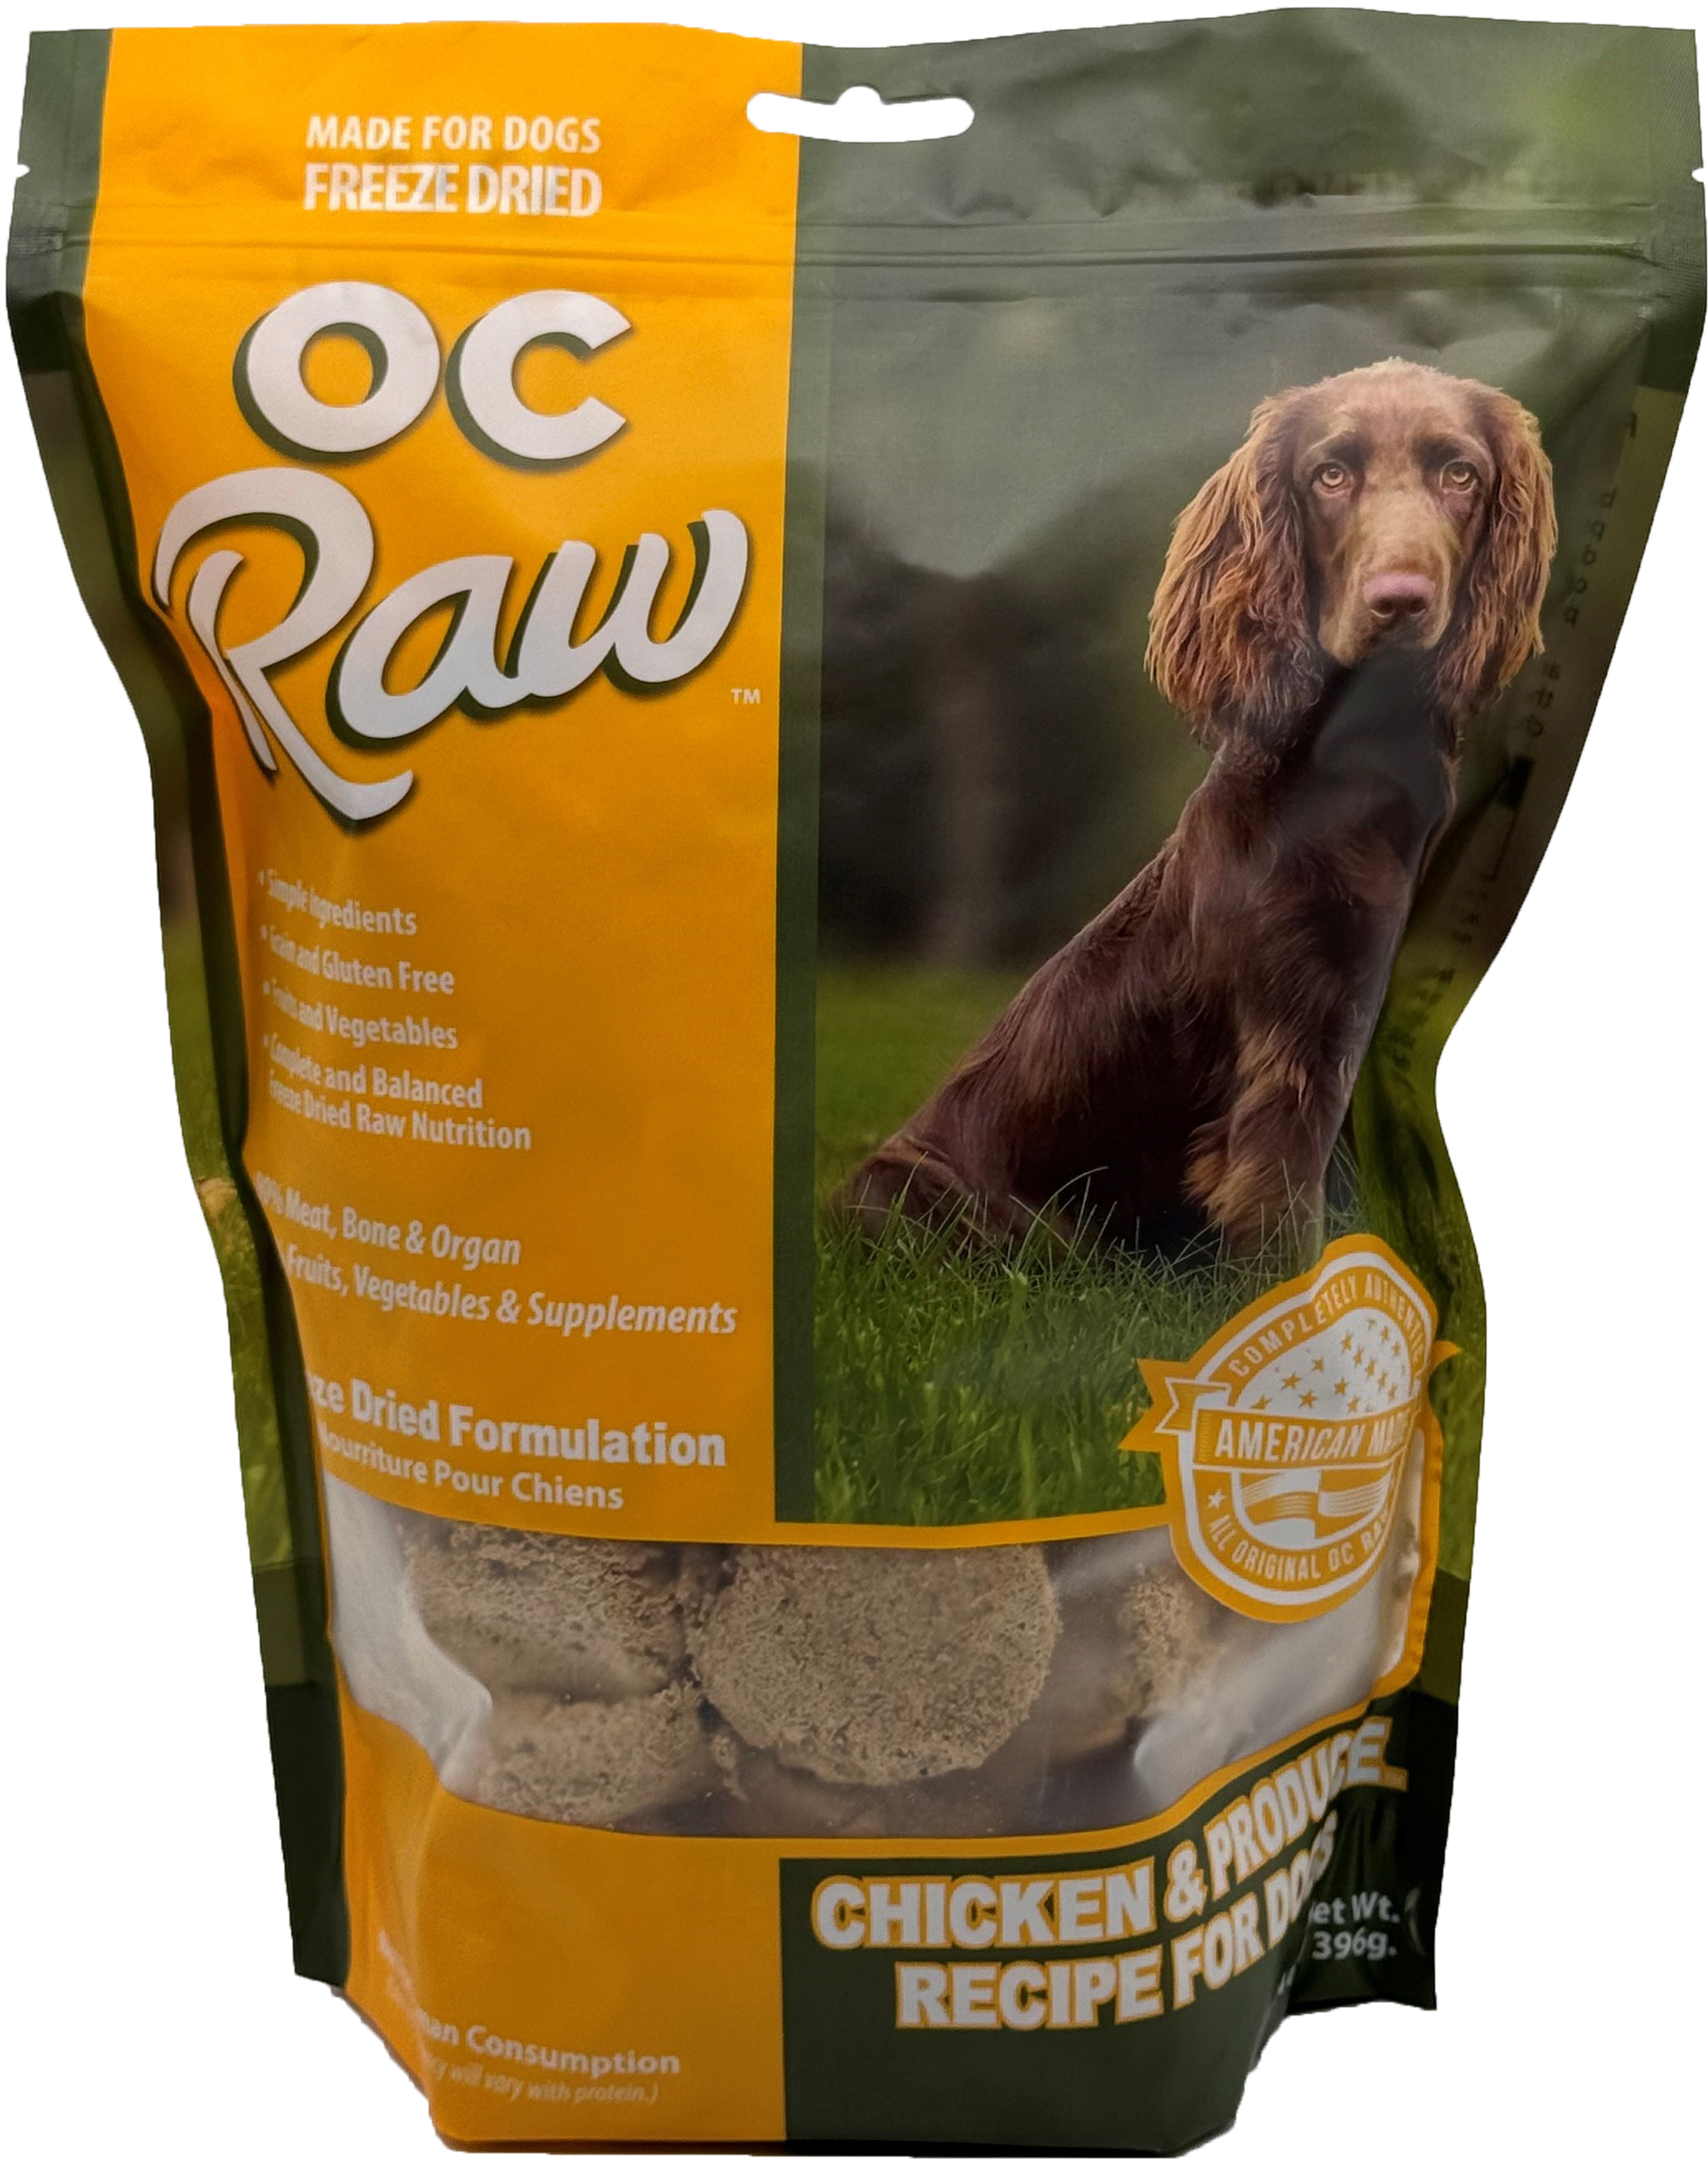 OC Raw Freeze Dried Dog Food